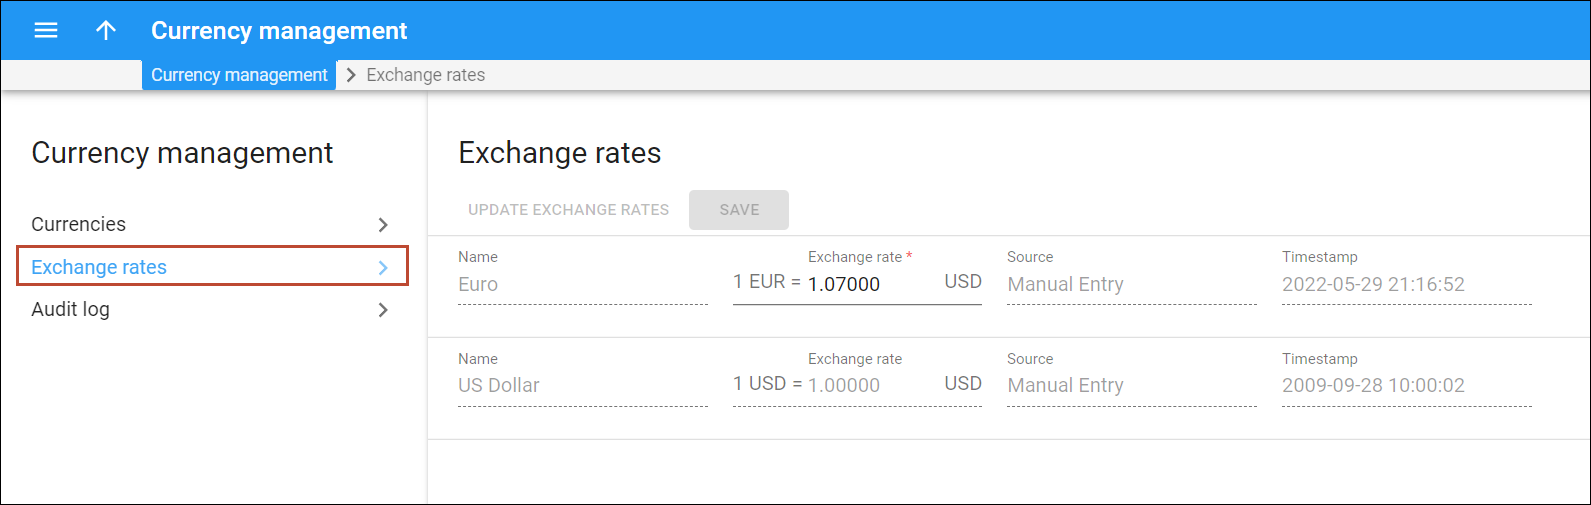 Update exchange rates